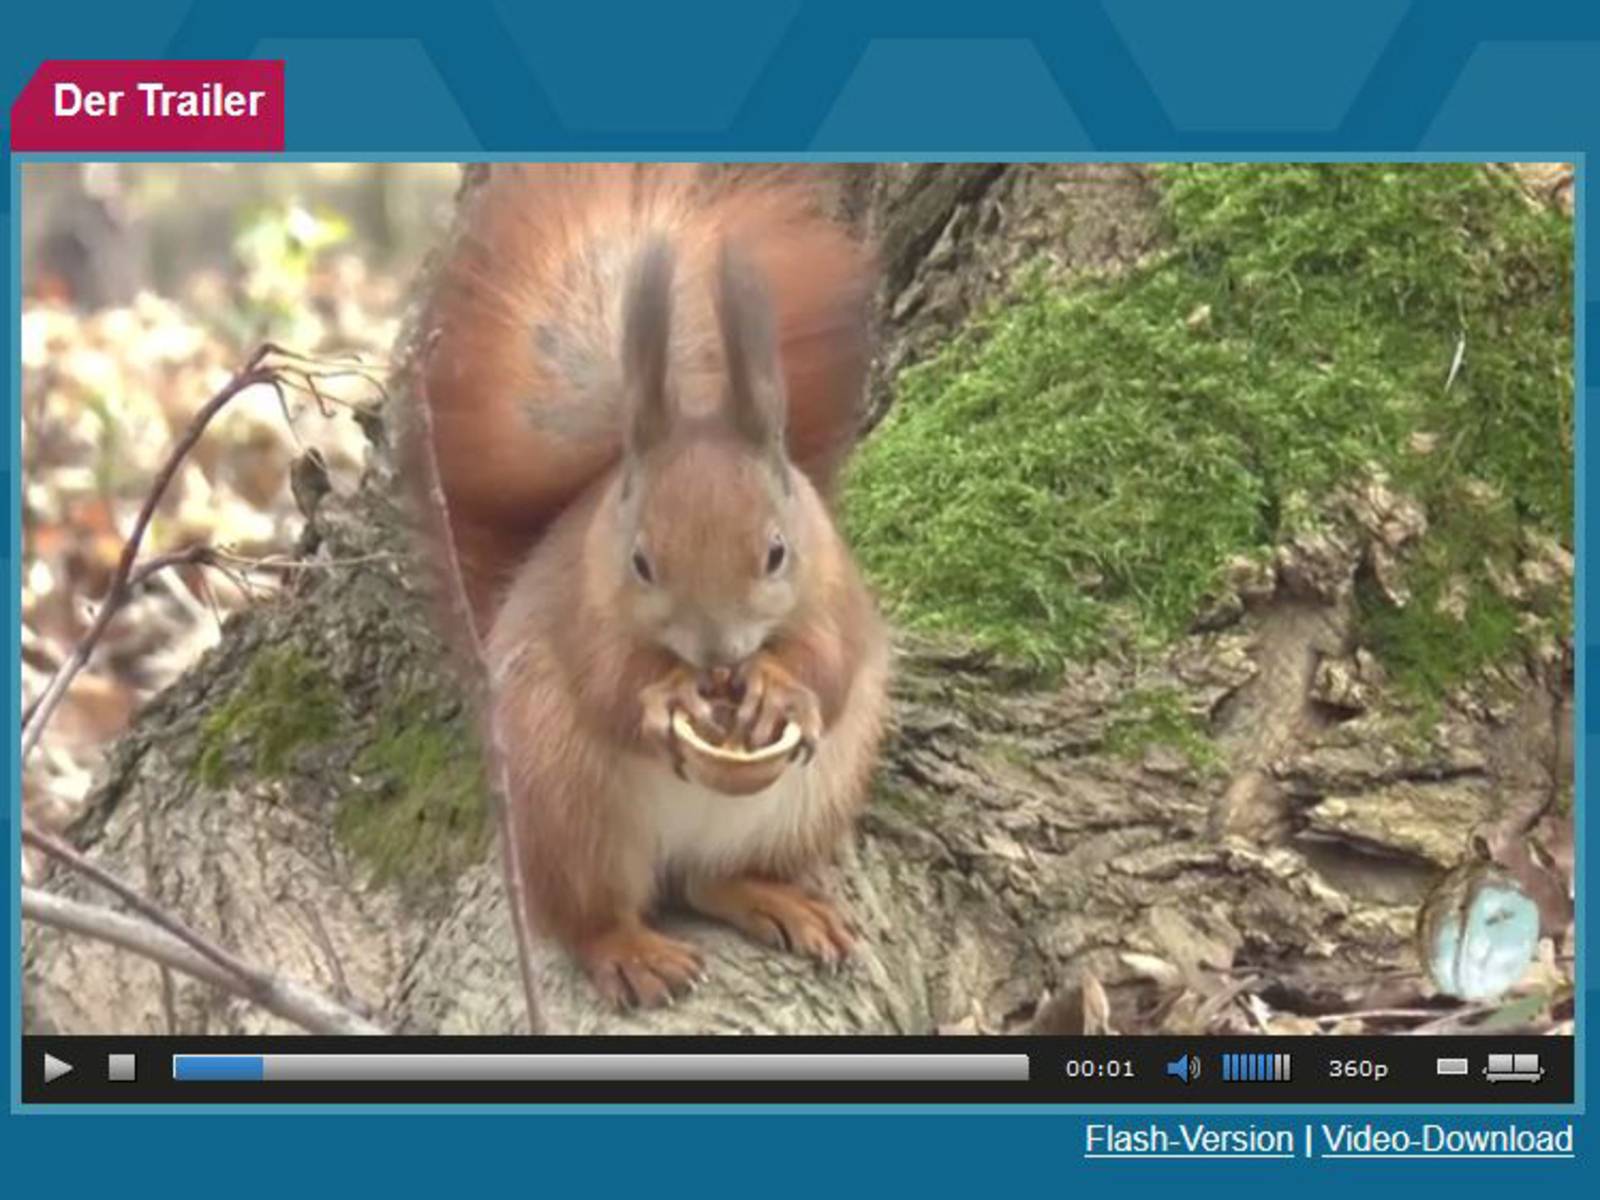 Filmausschnitt, der ein Eichhörnchen zeigt.